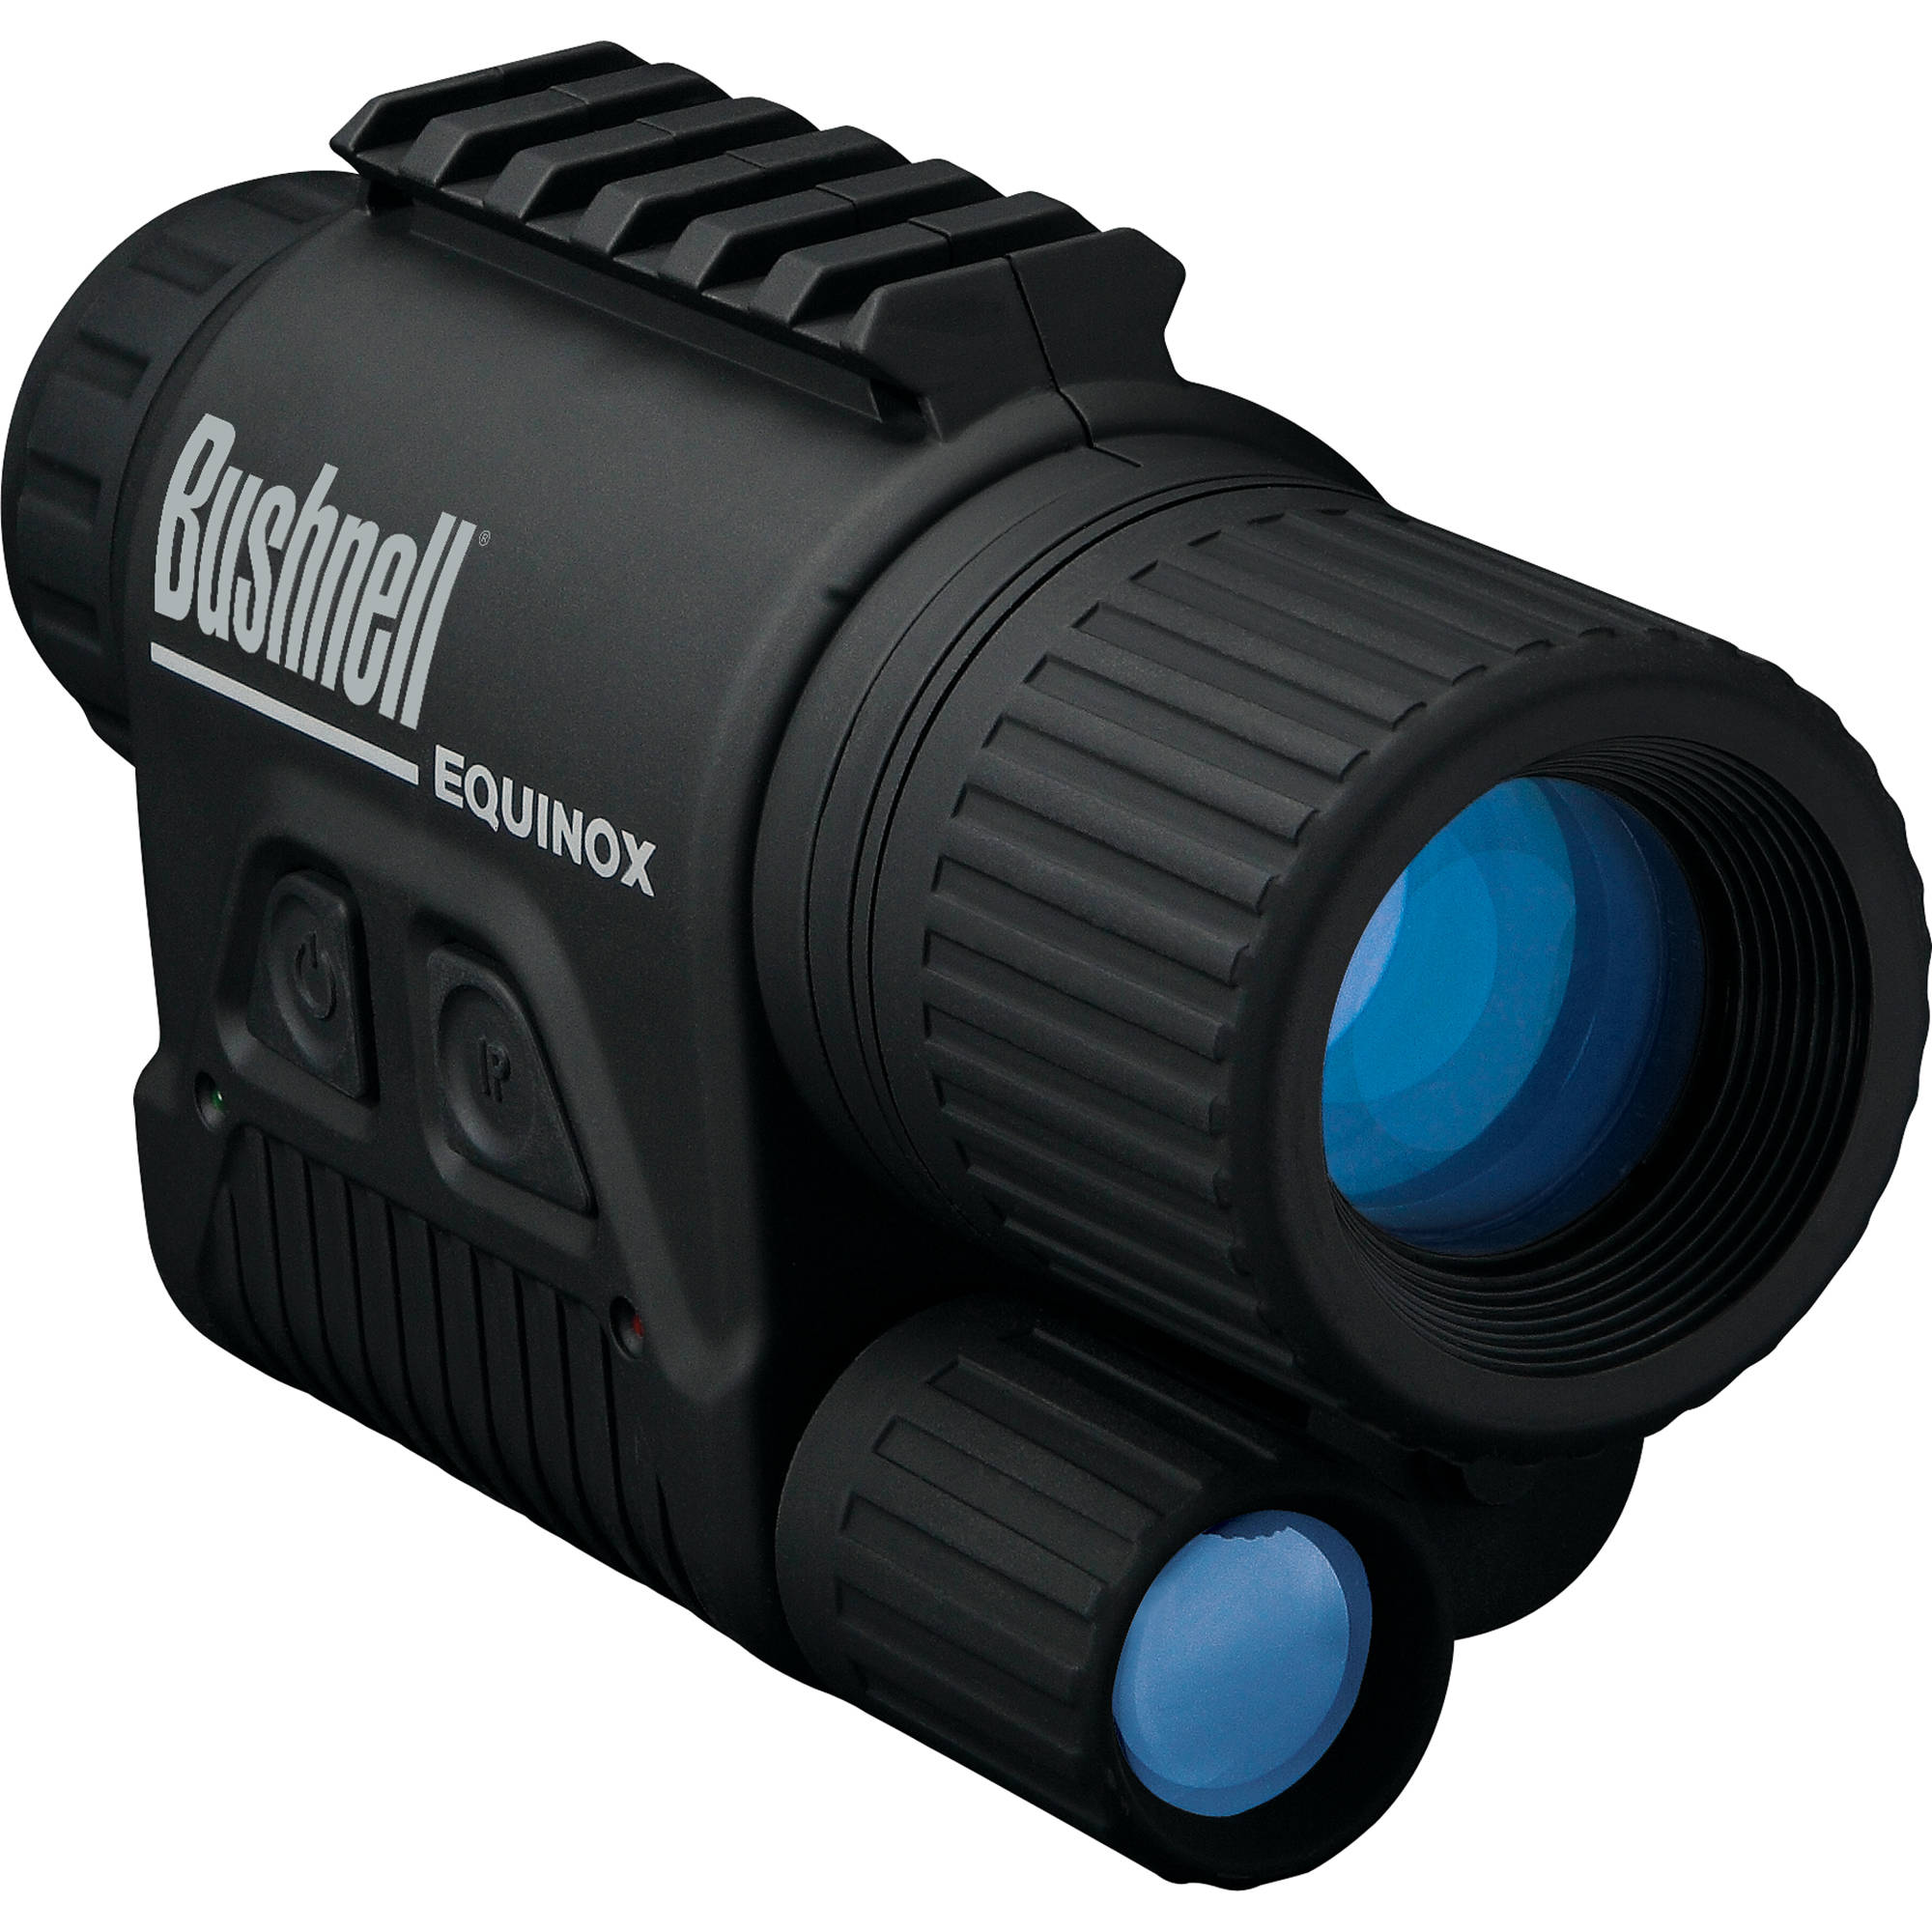 bushnell night vision camera